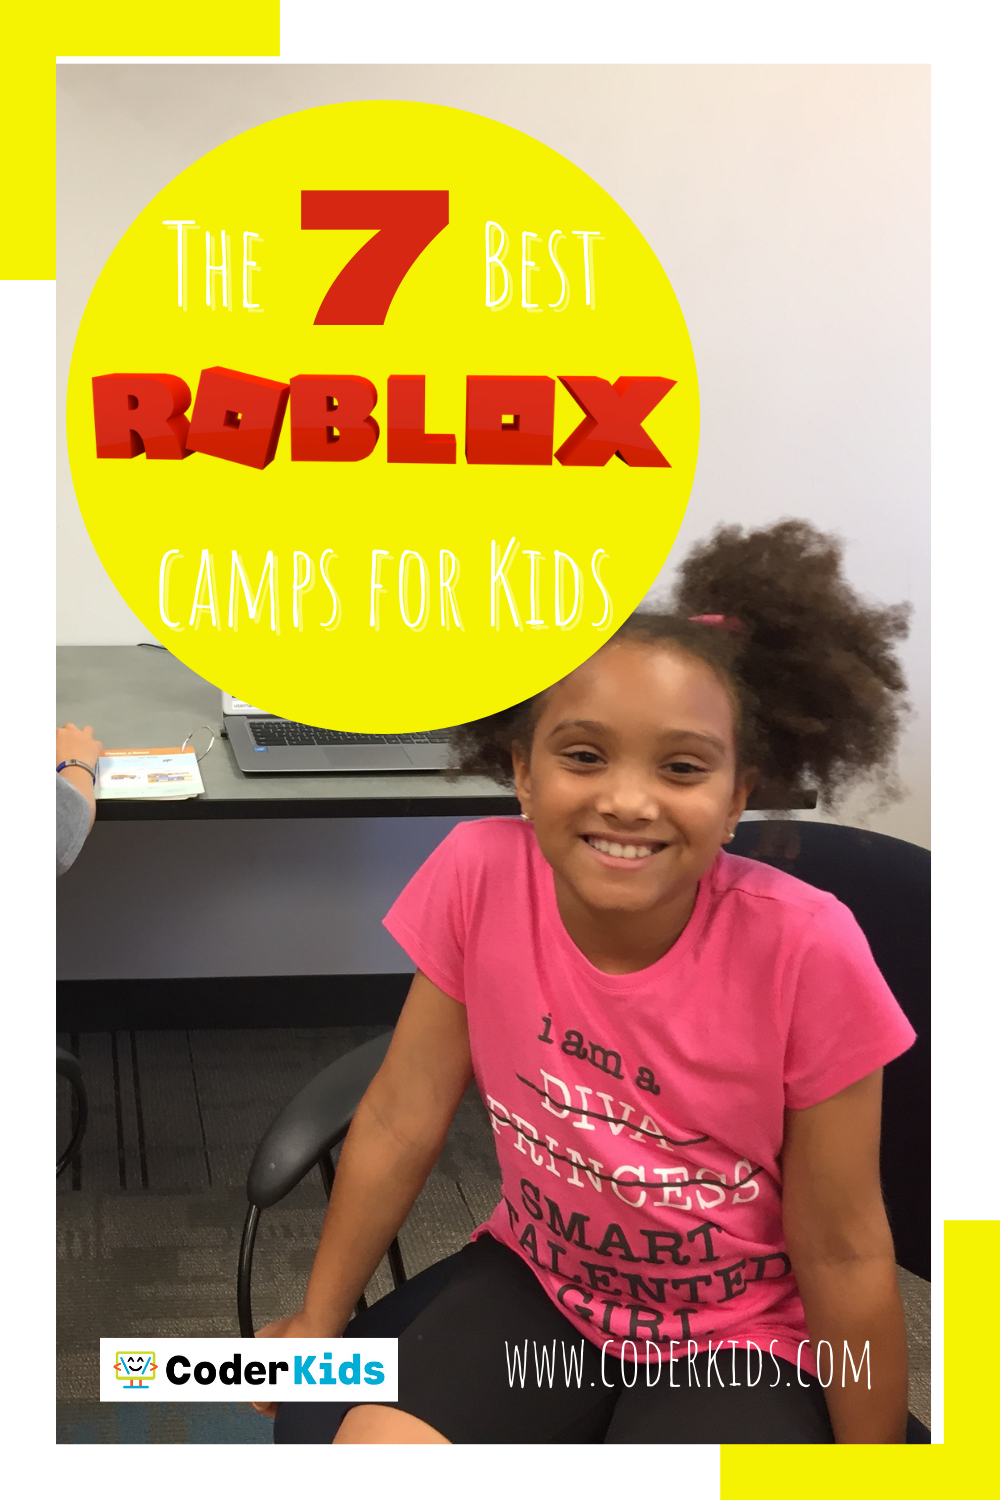 Jul 24, Next Level Roblox Development Summer Camp